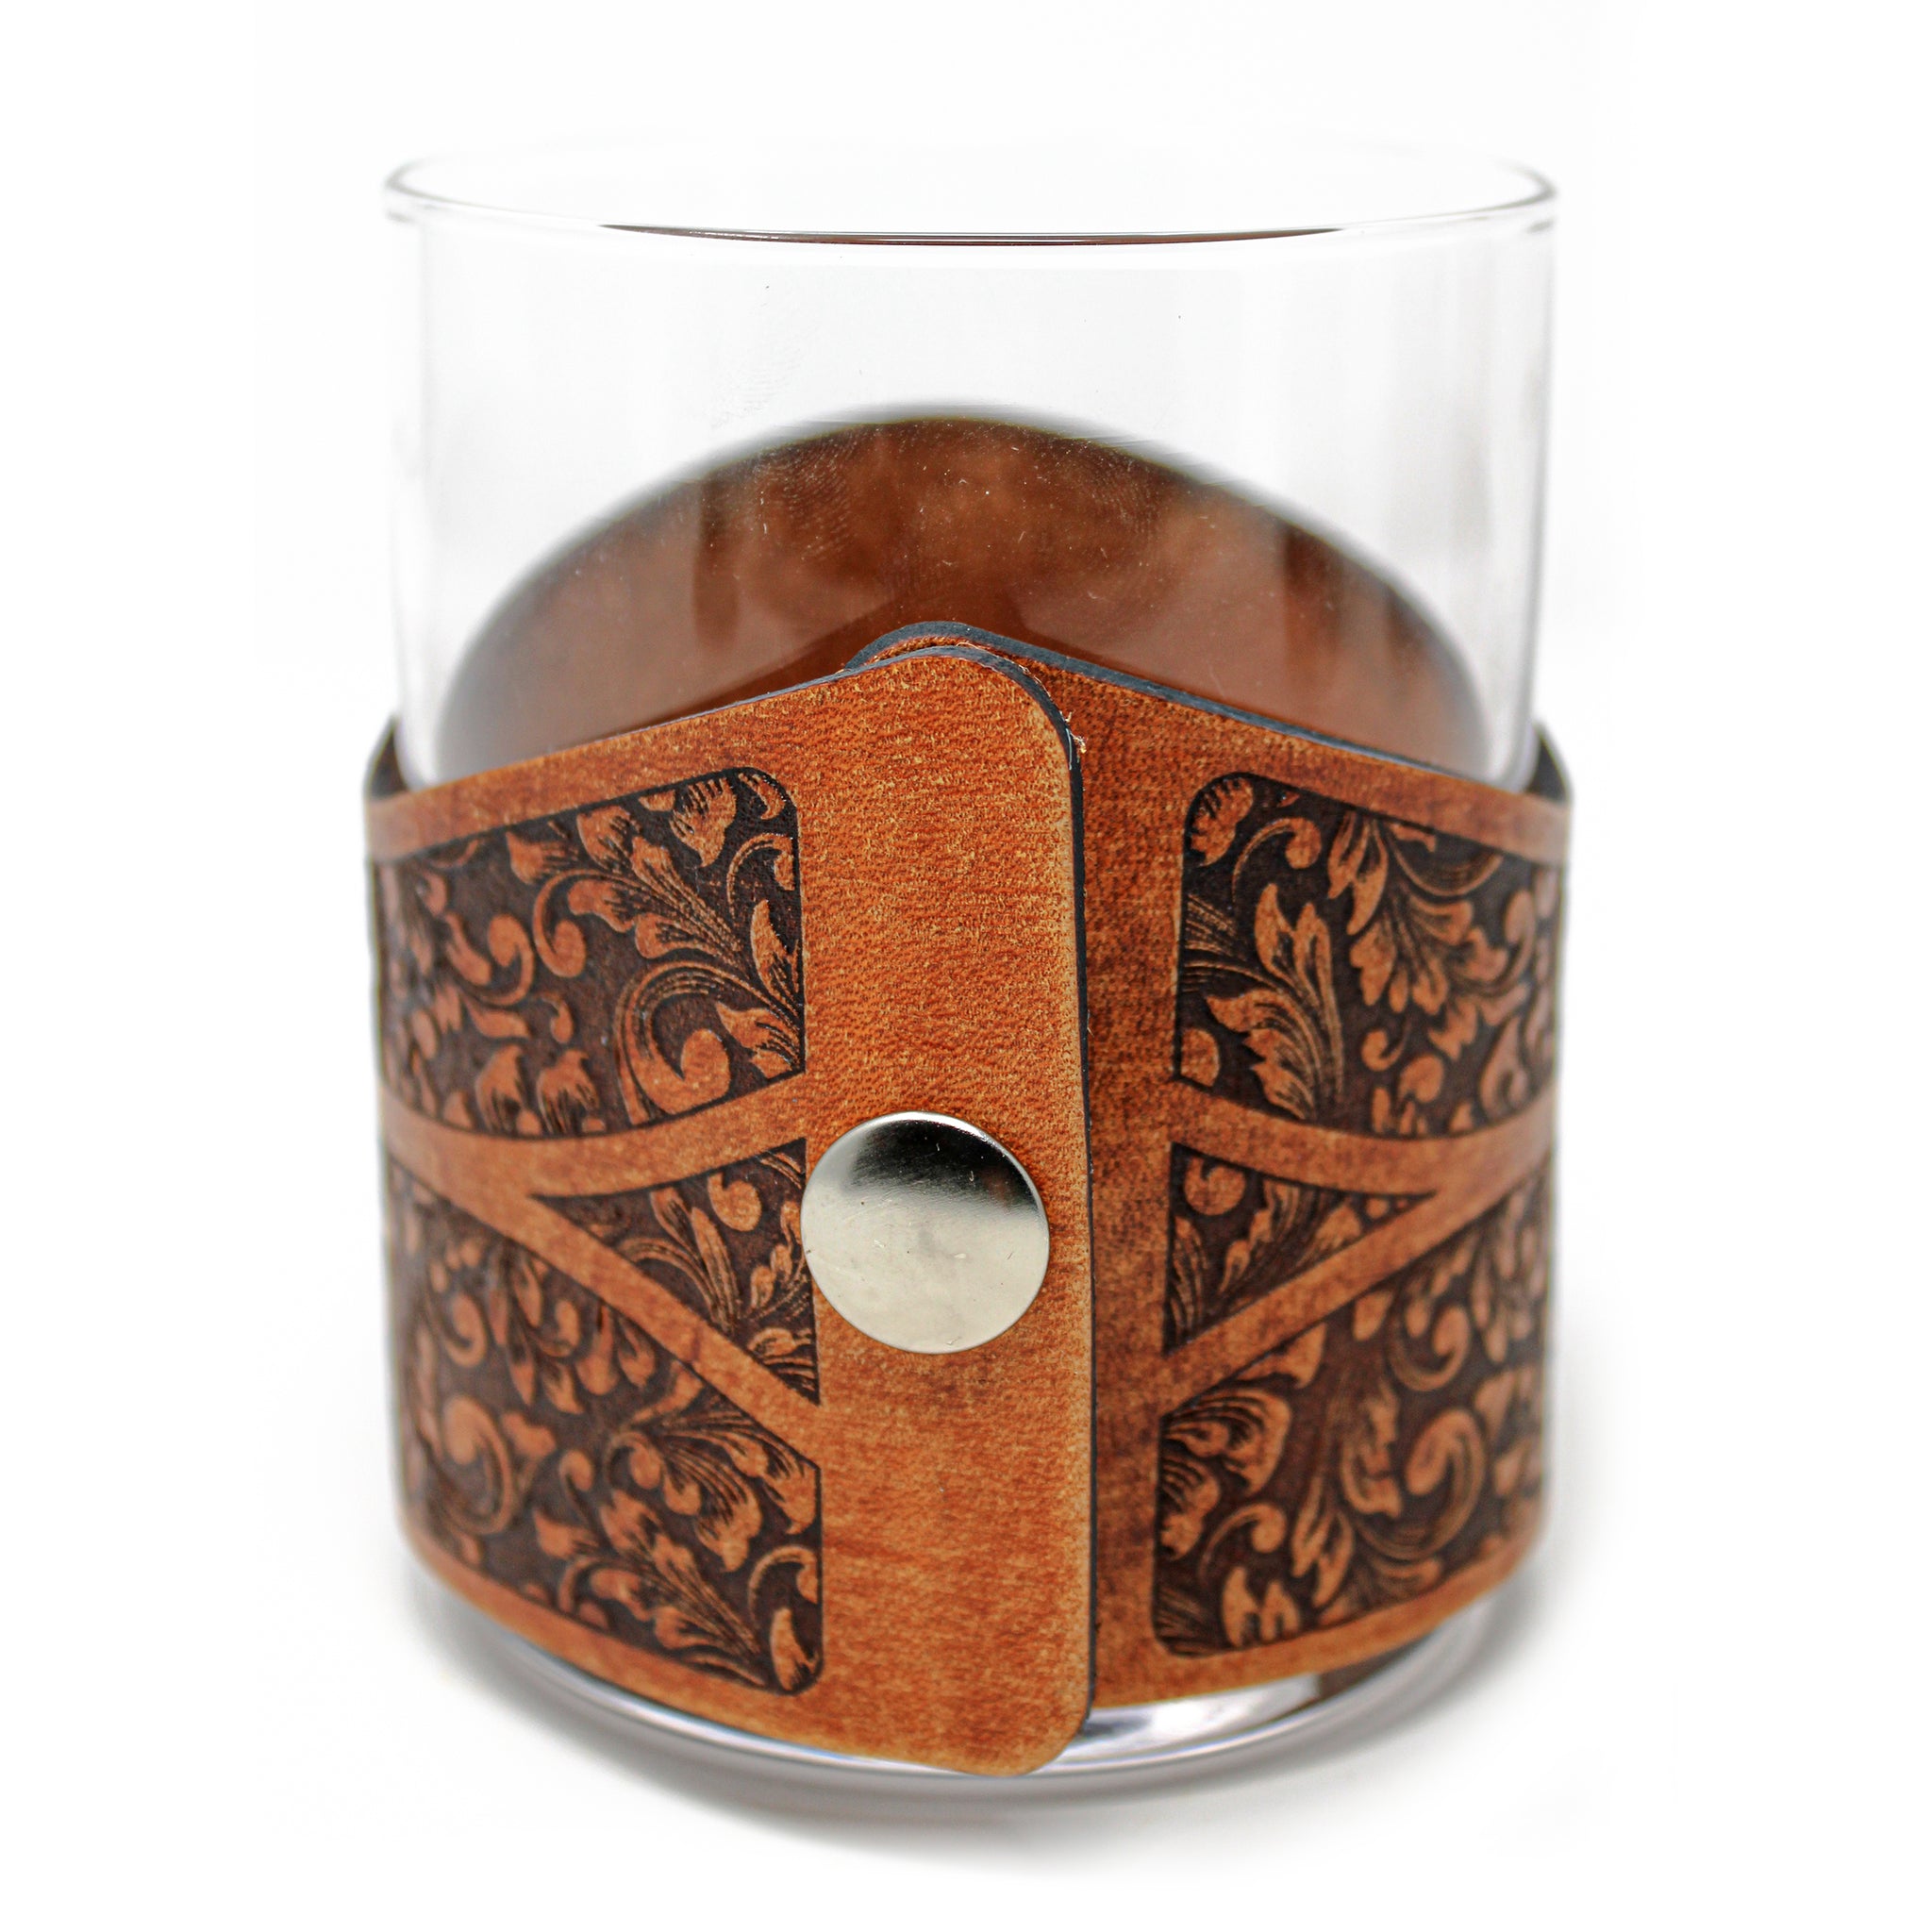 Whiskey Glass Leather Wrap - Tarpon Engraver glass